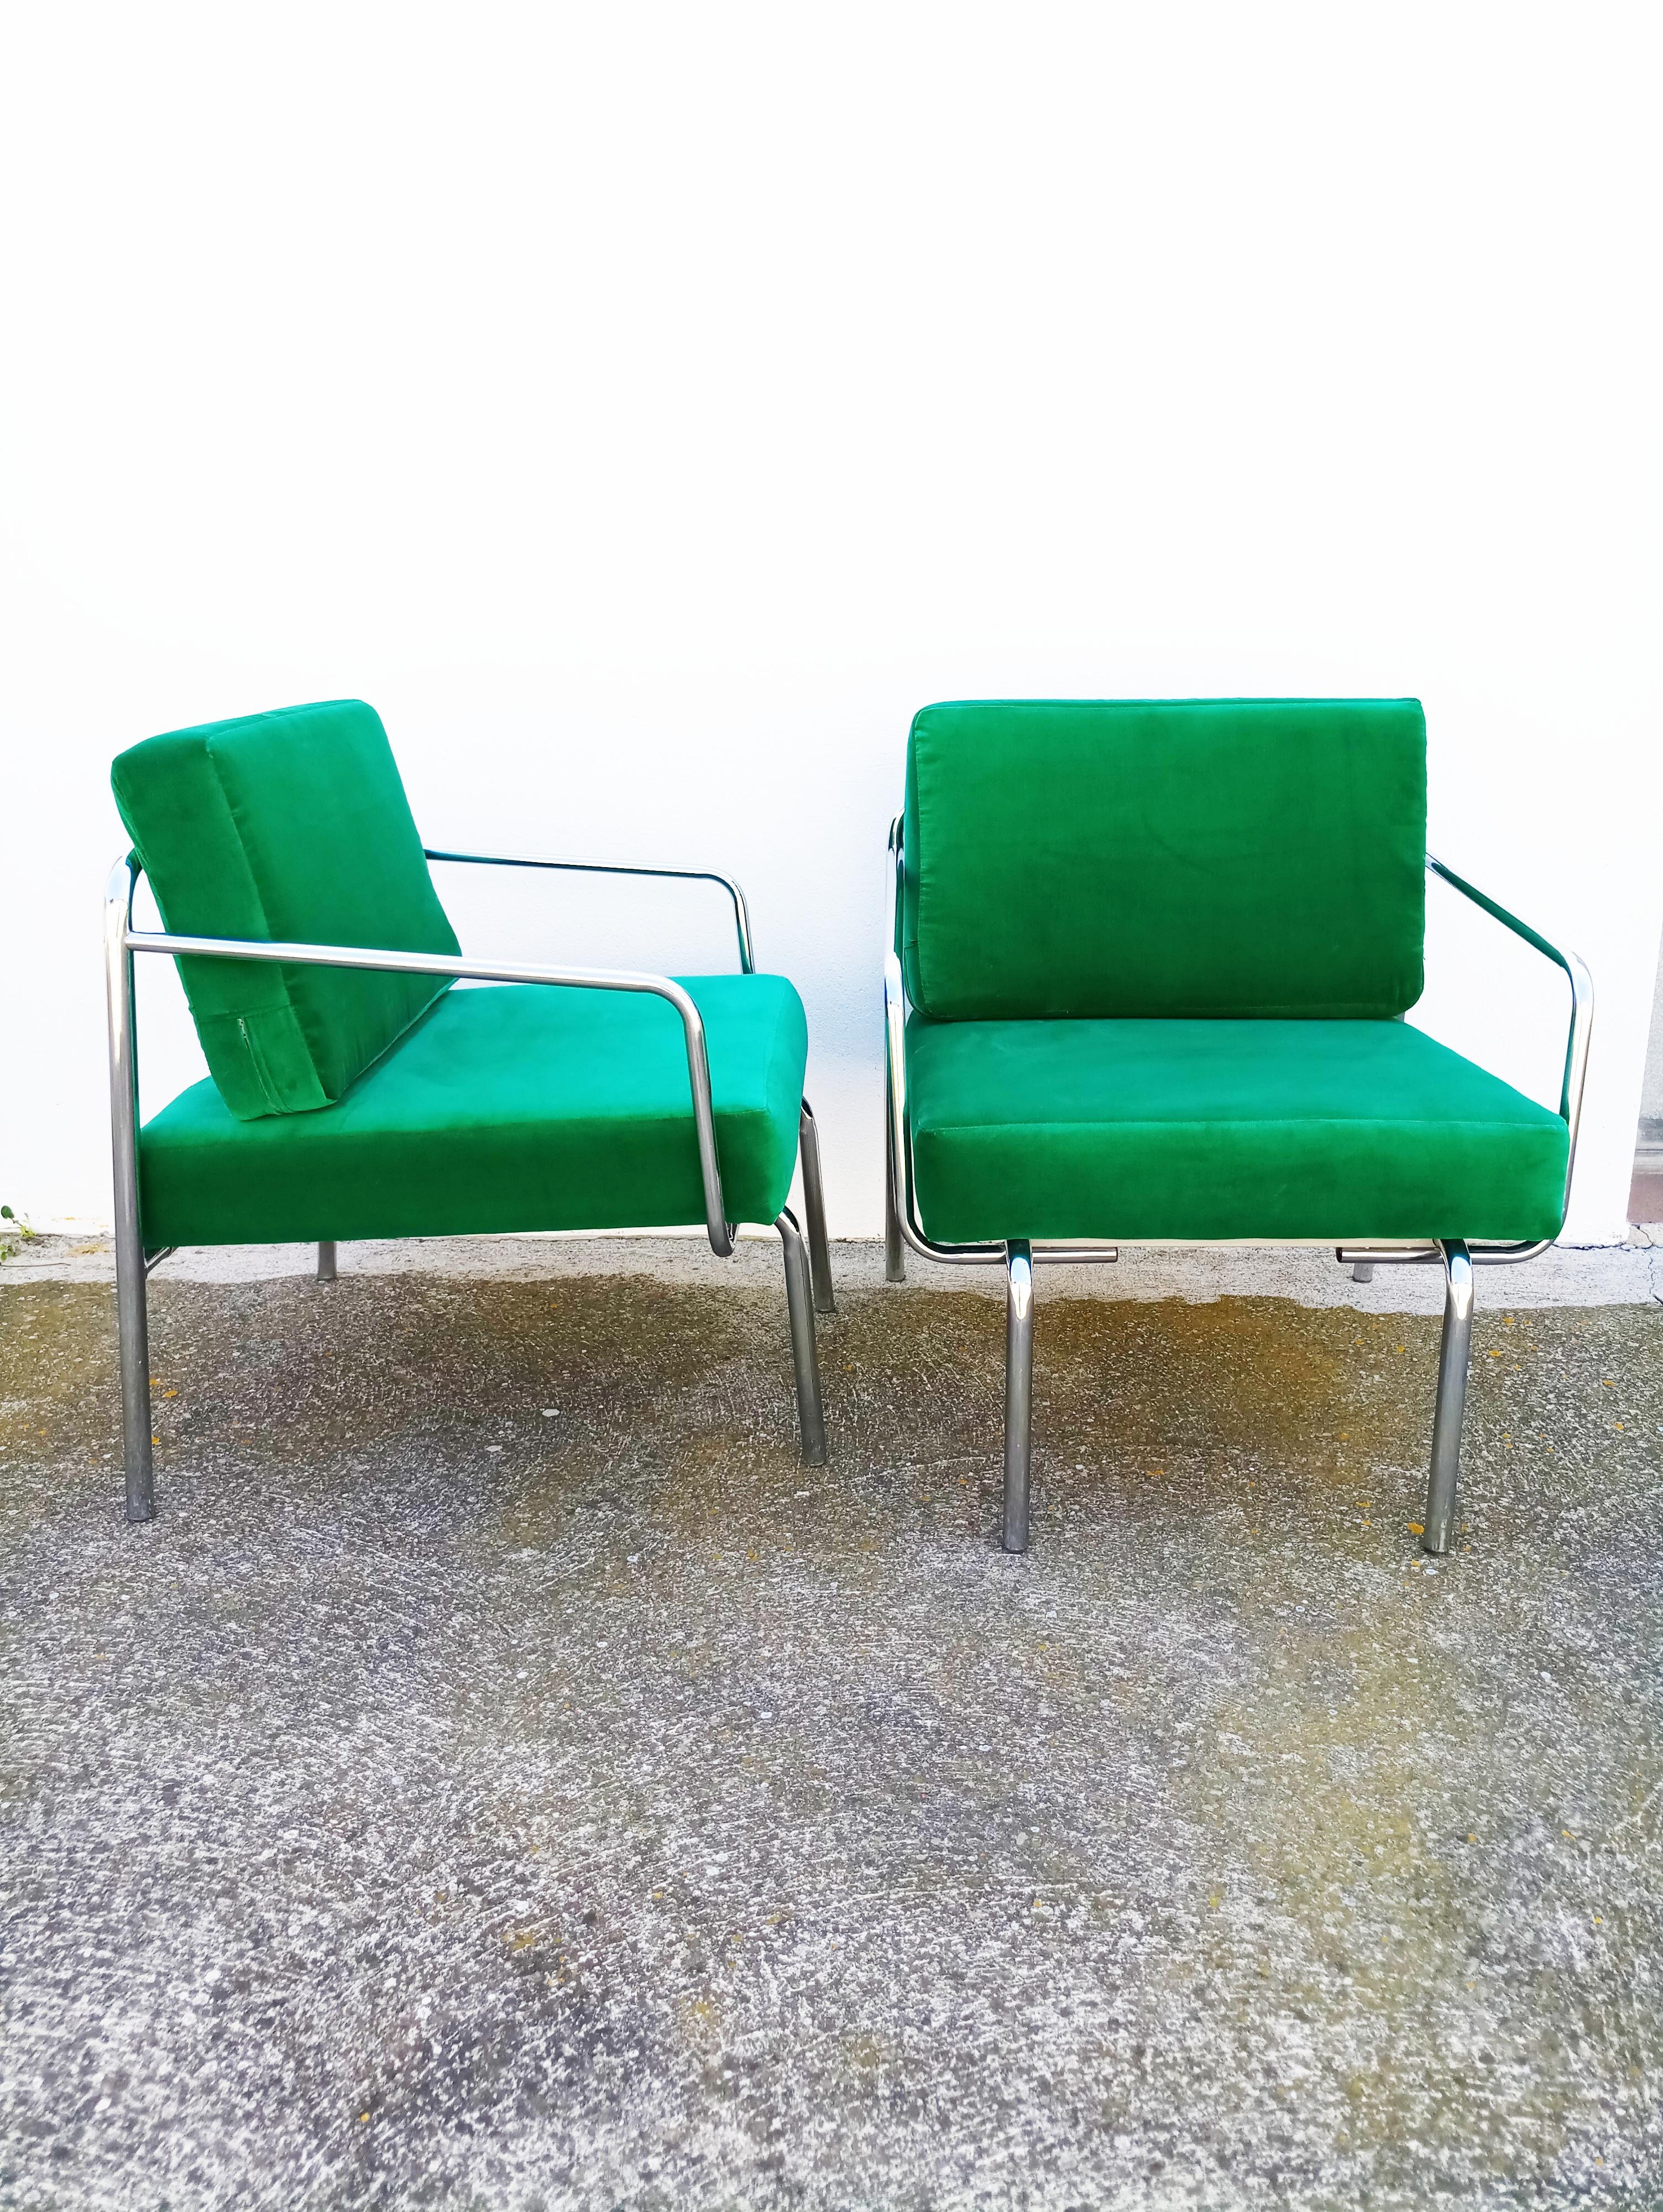 Belle et rare paire de fauteuils en velours vert des années 1970 fabriqués en Italie, velours vert neuf, mousse neuve, en parfait état vintage.